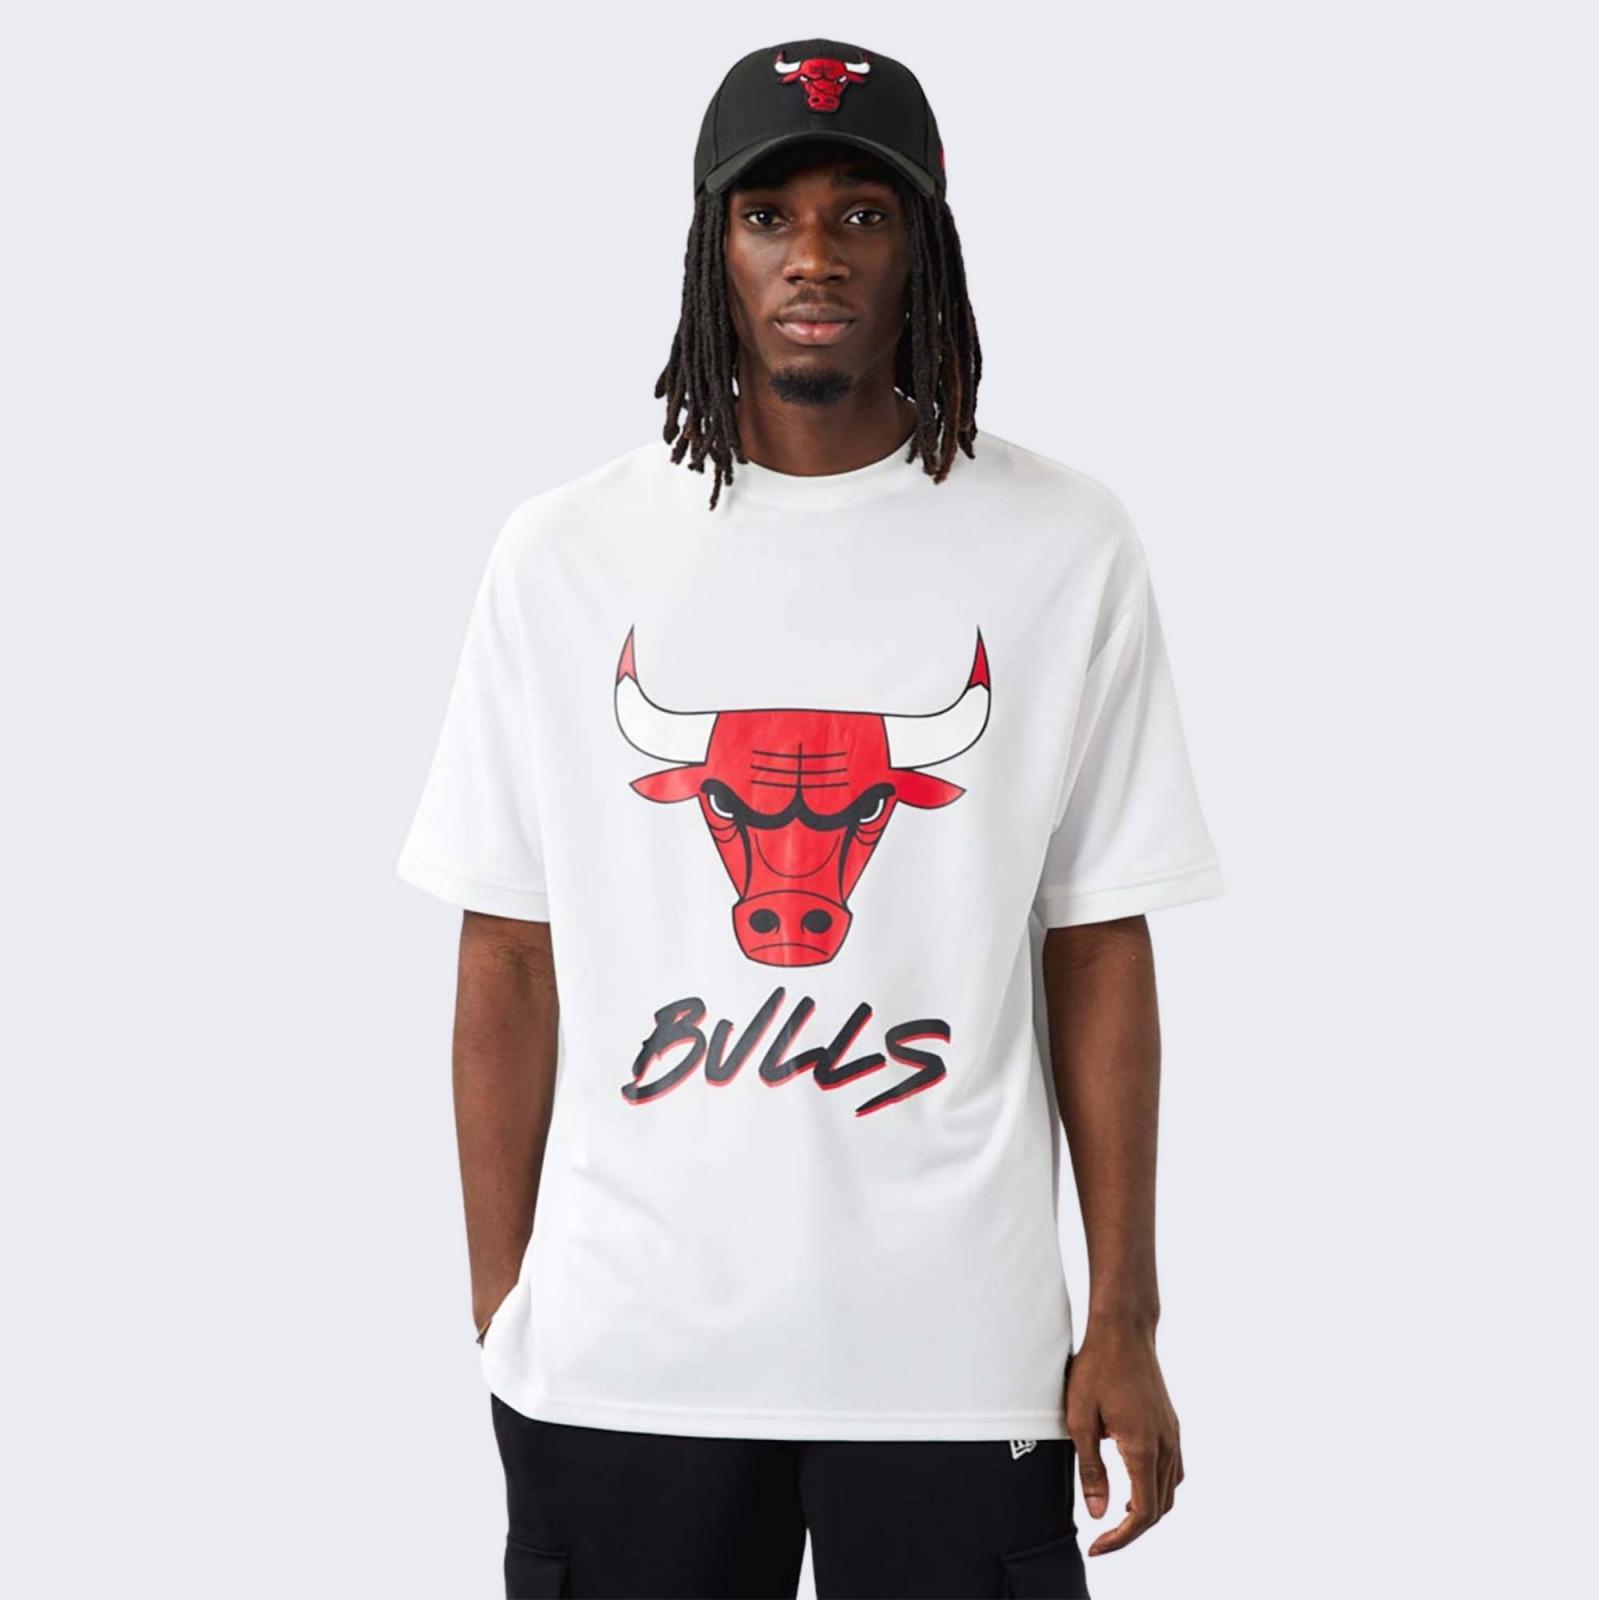 bulls shirt white